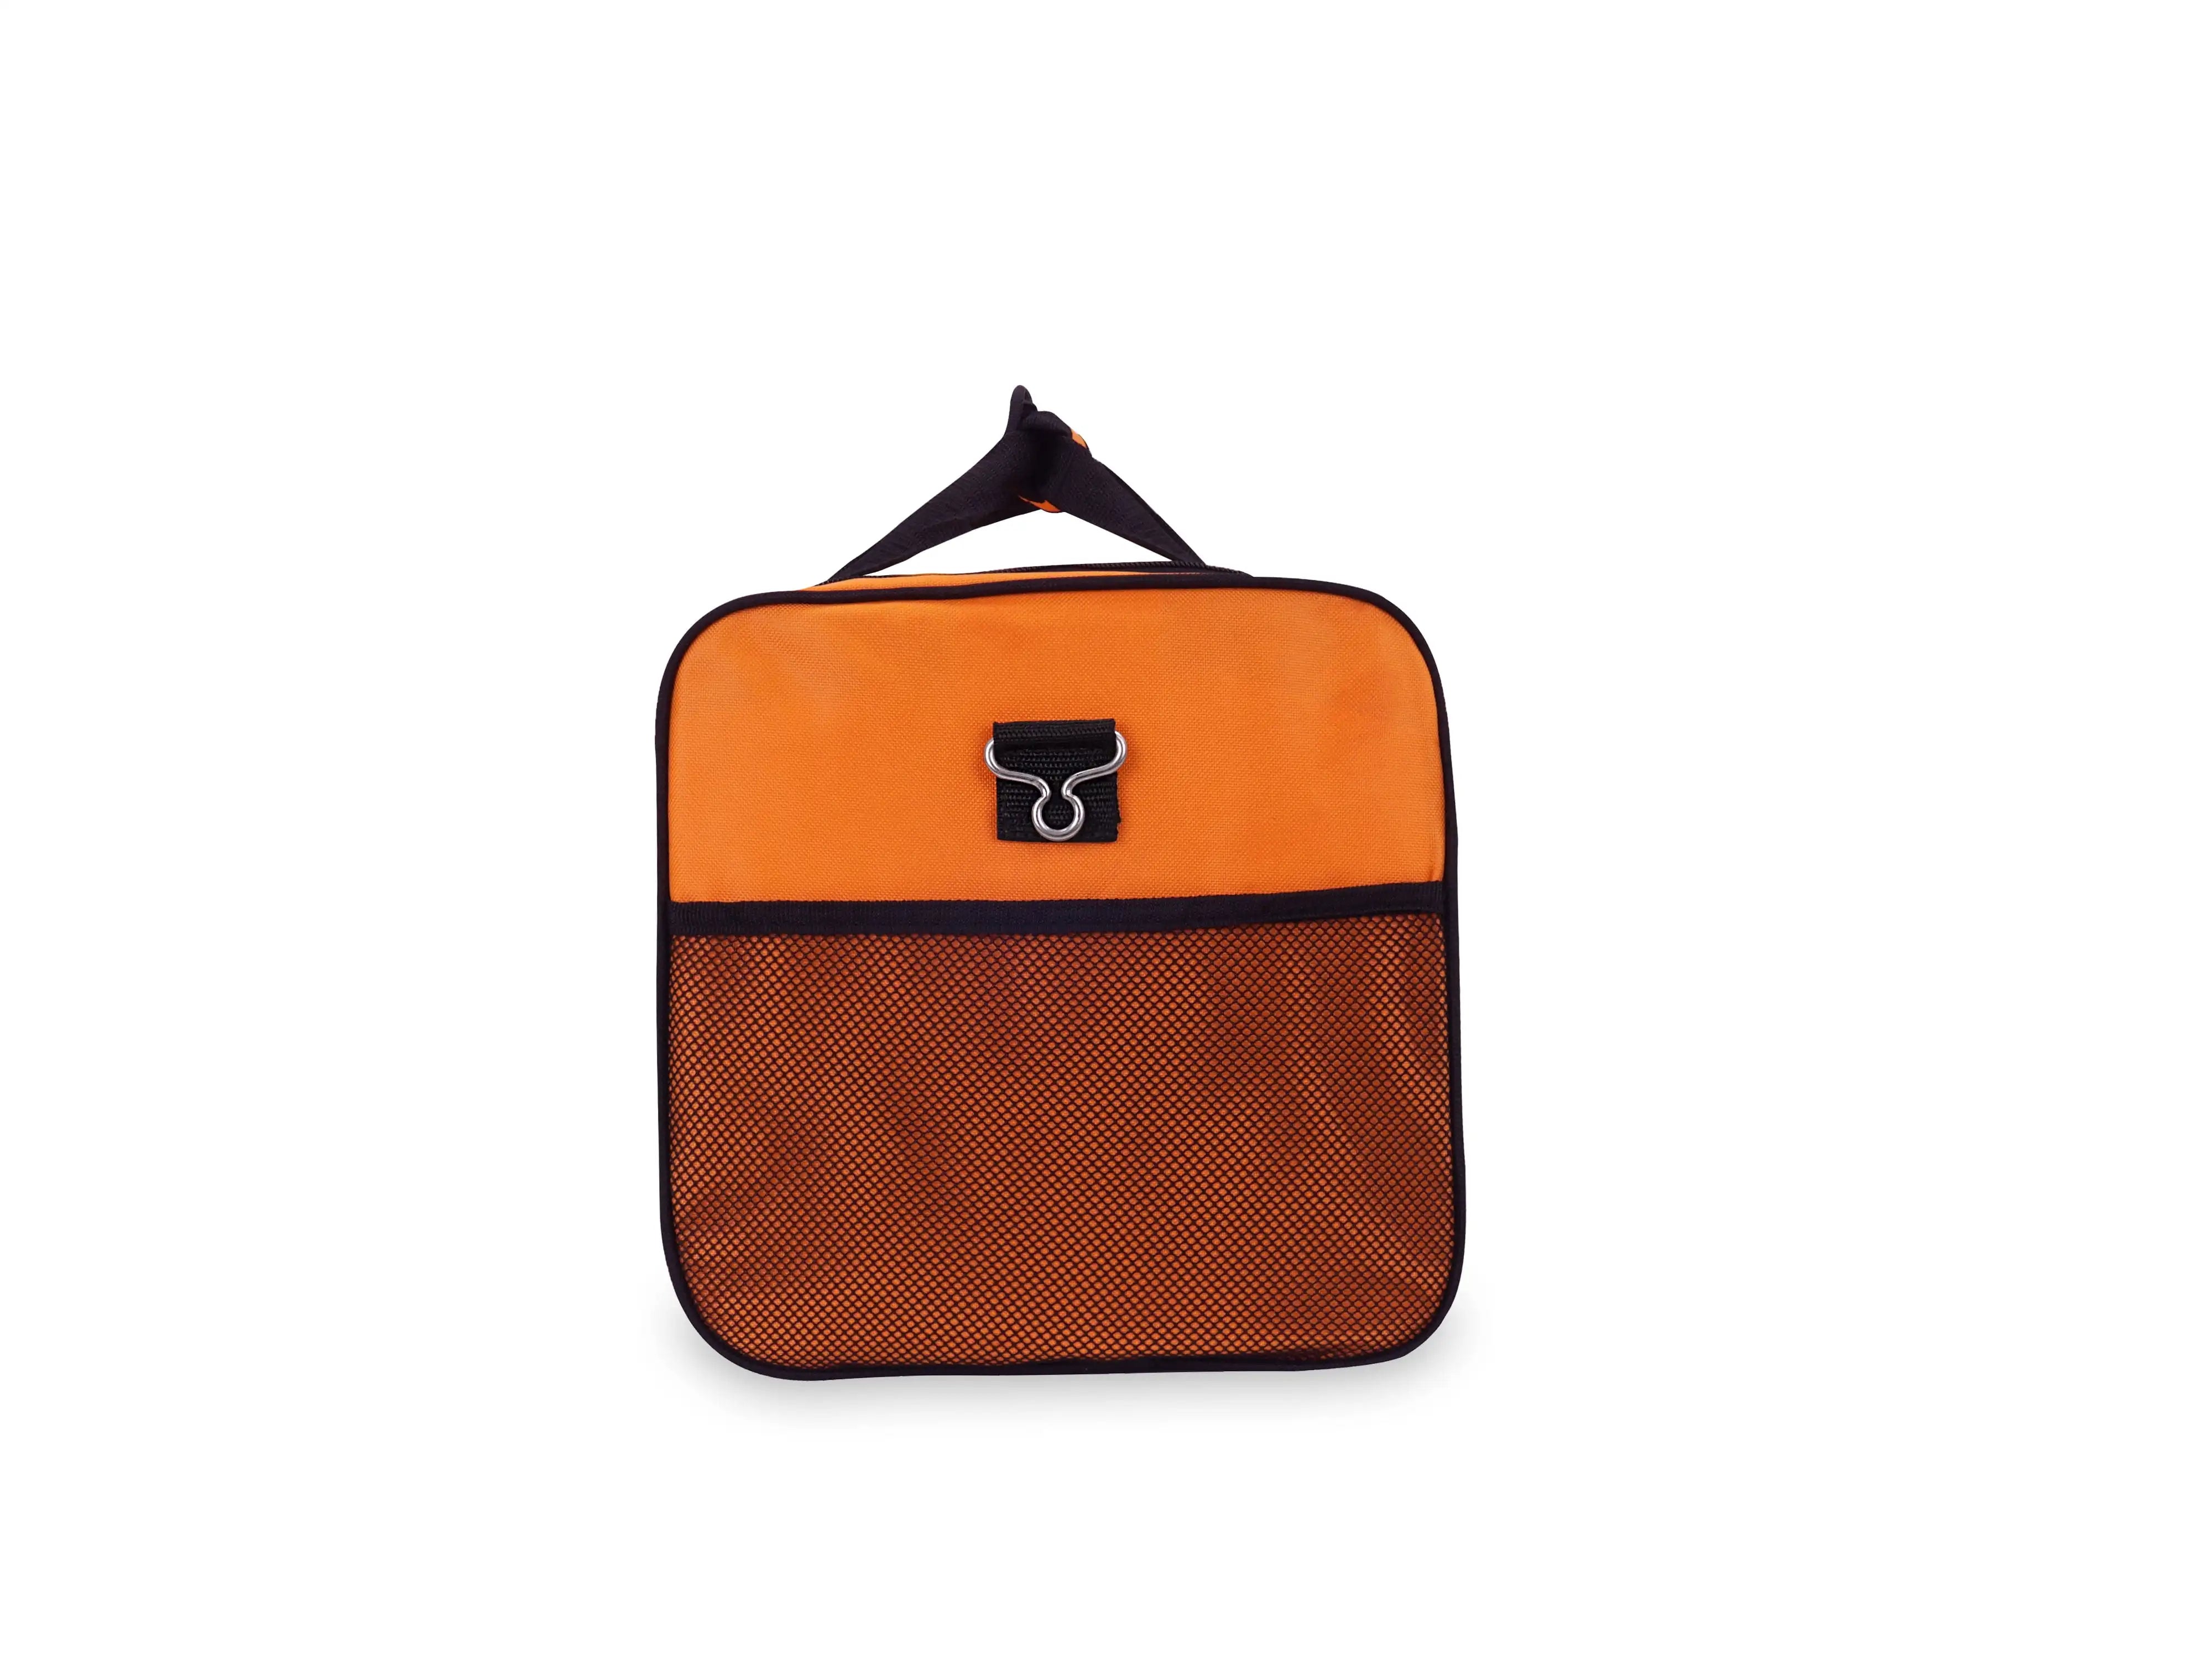 Orange Duffel Bag